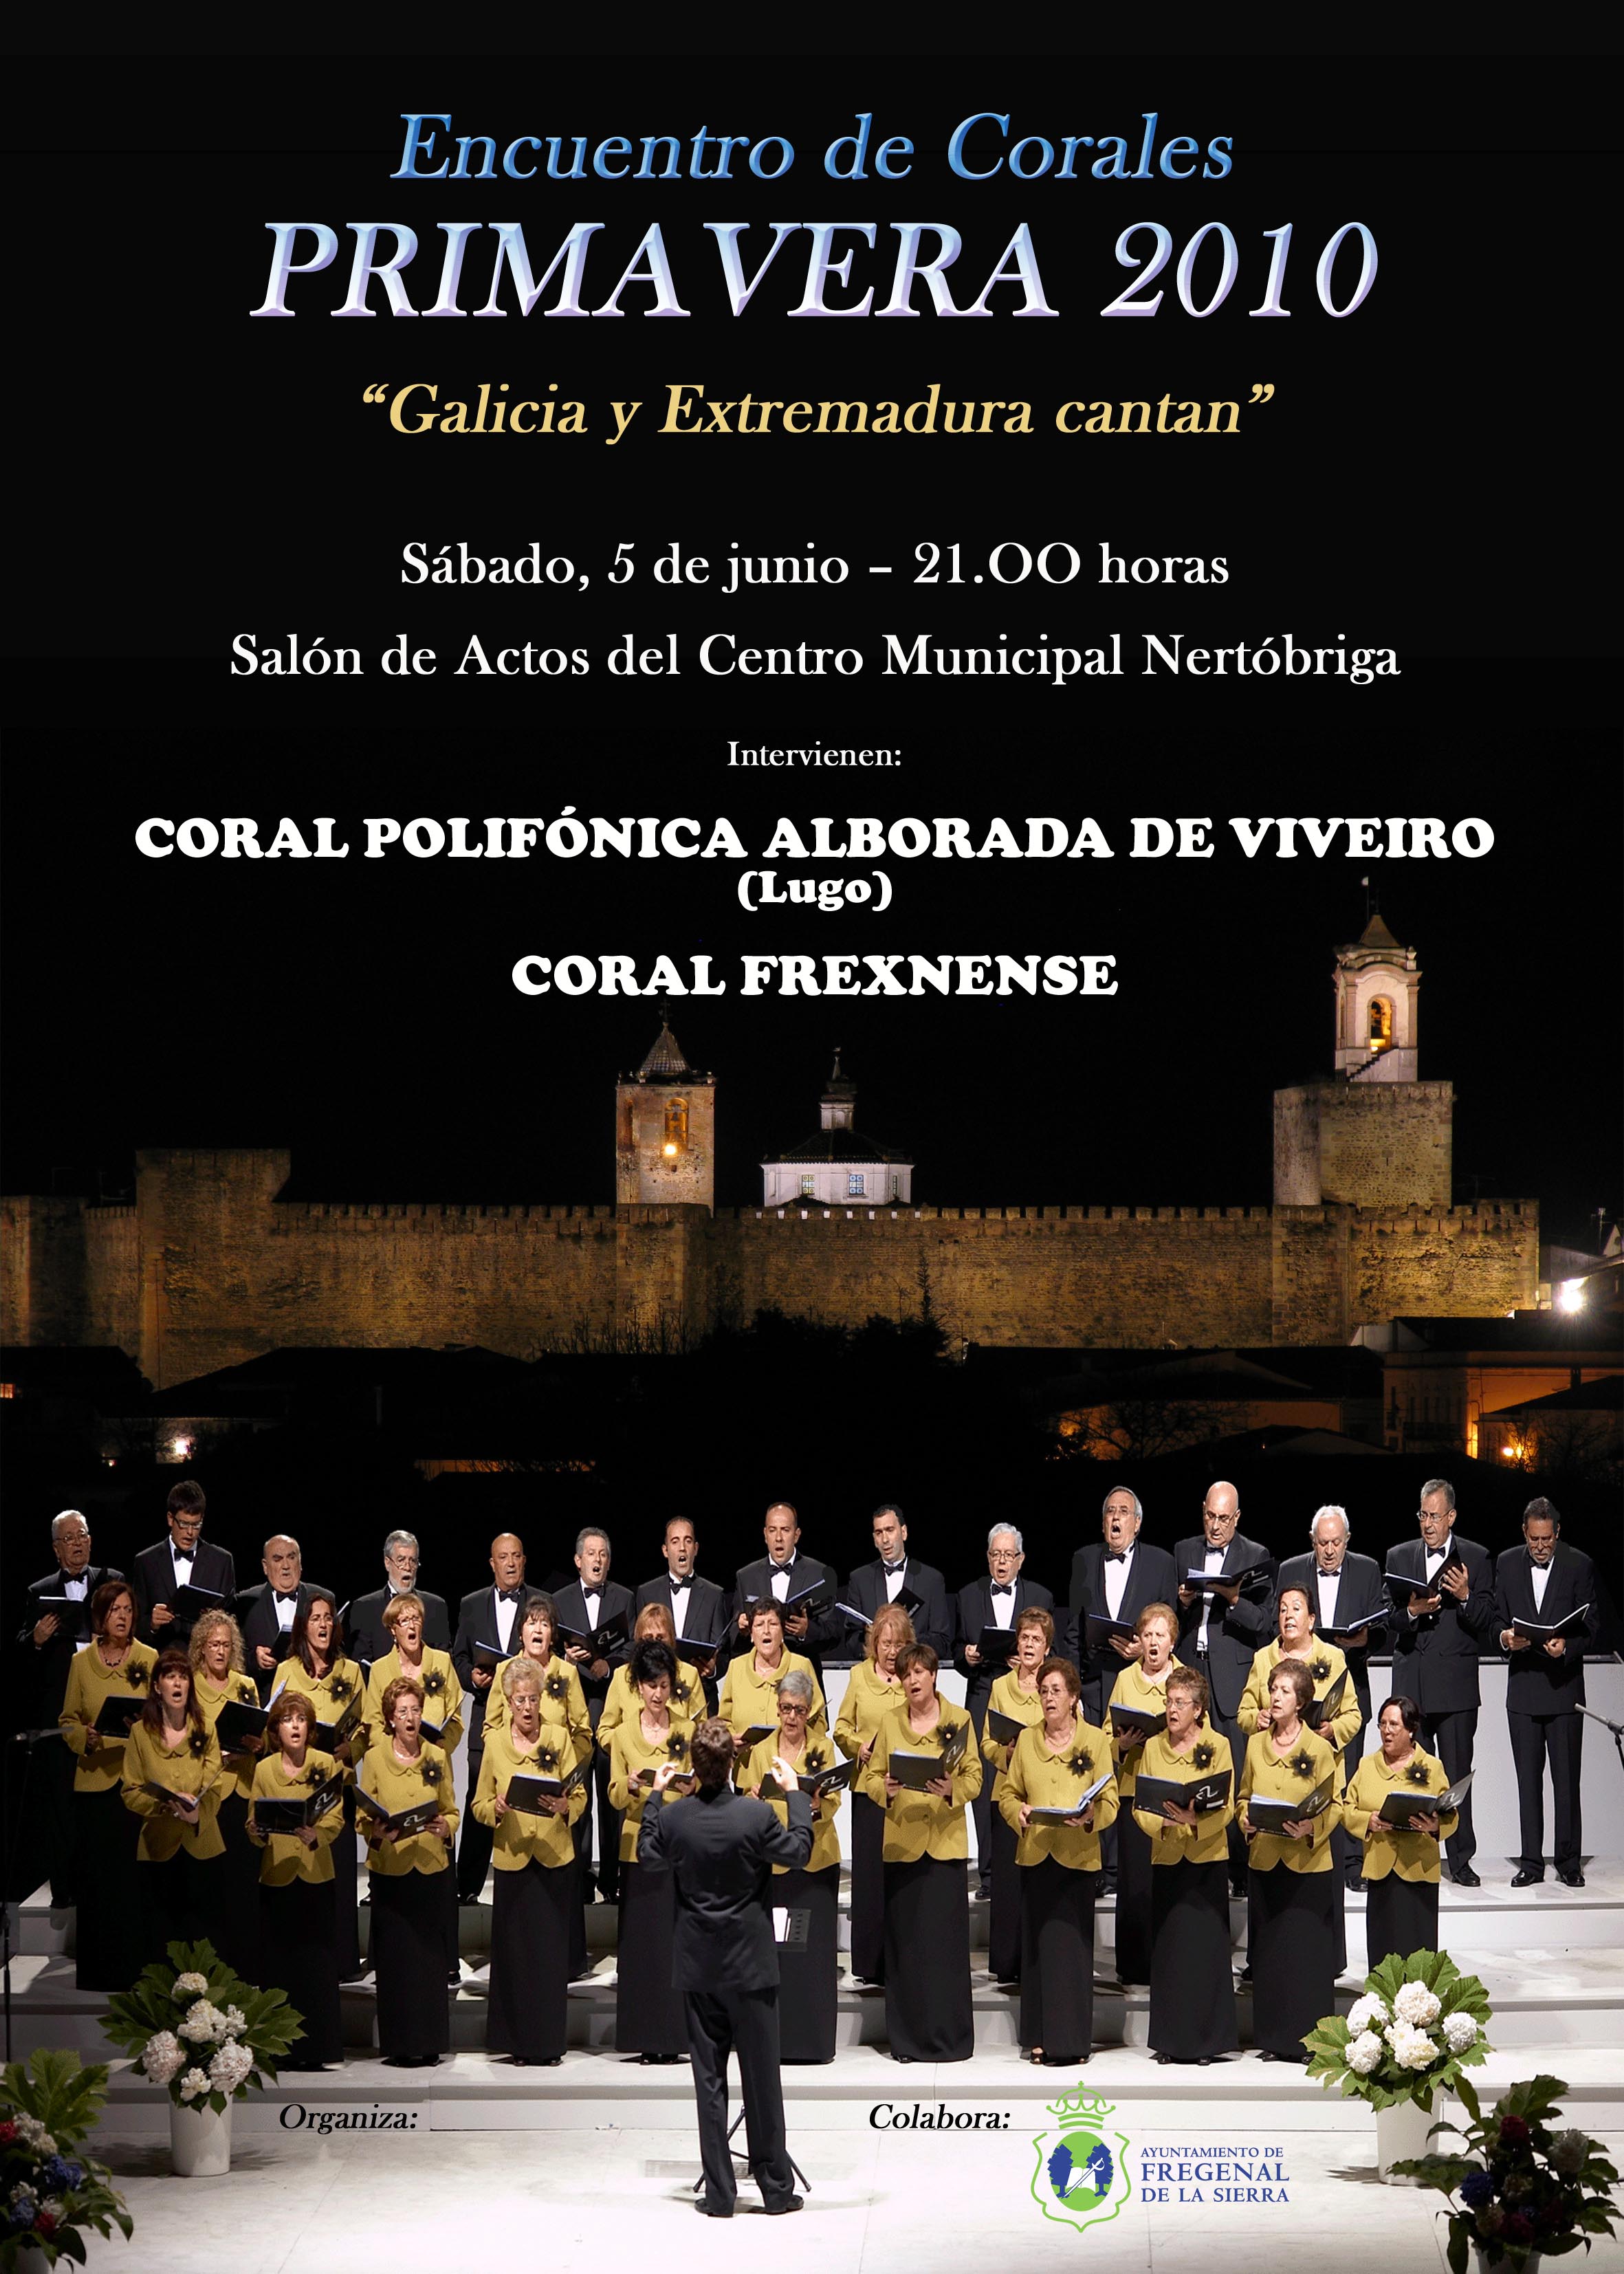 La Coral Frexnense organiza el encuentro "Galicia y Extremadura cantan"